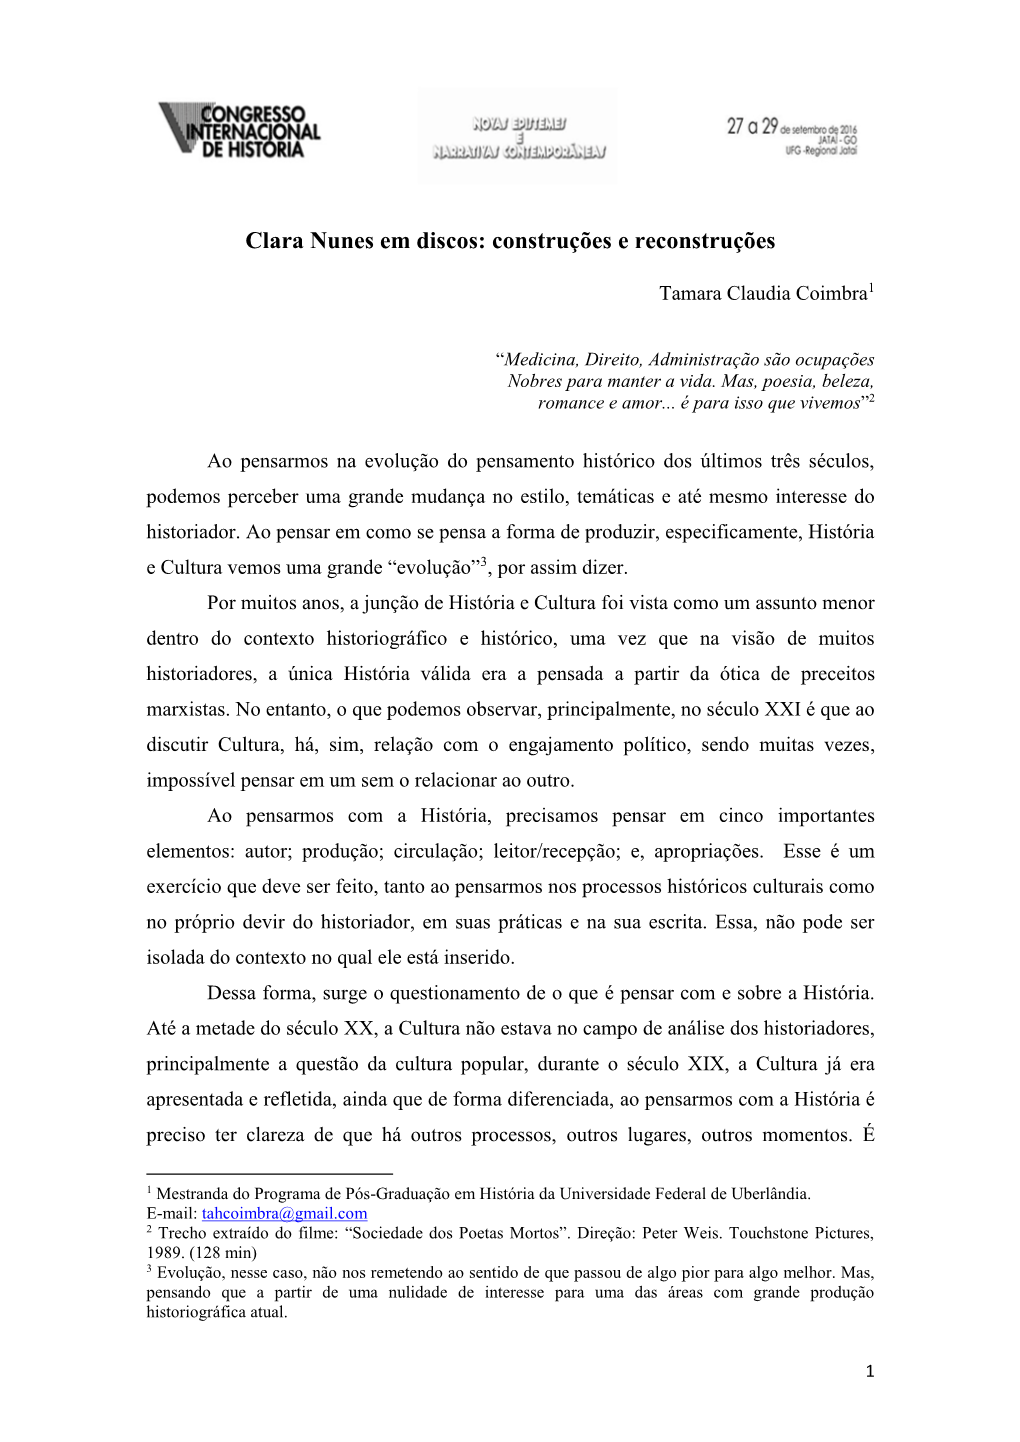 Clara Nunes Em Discos: Construções E Reconstruções